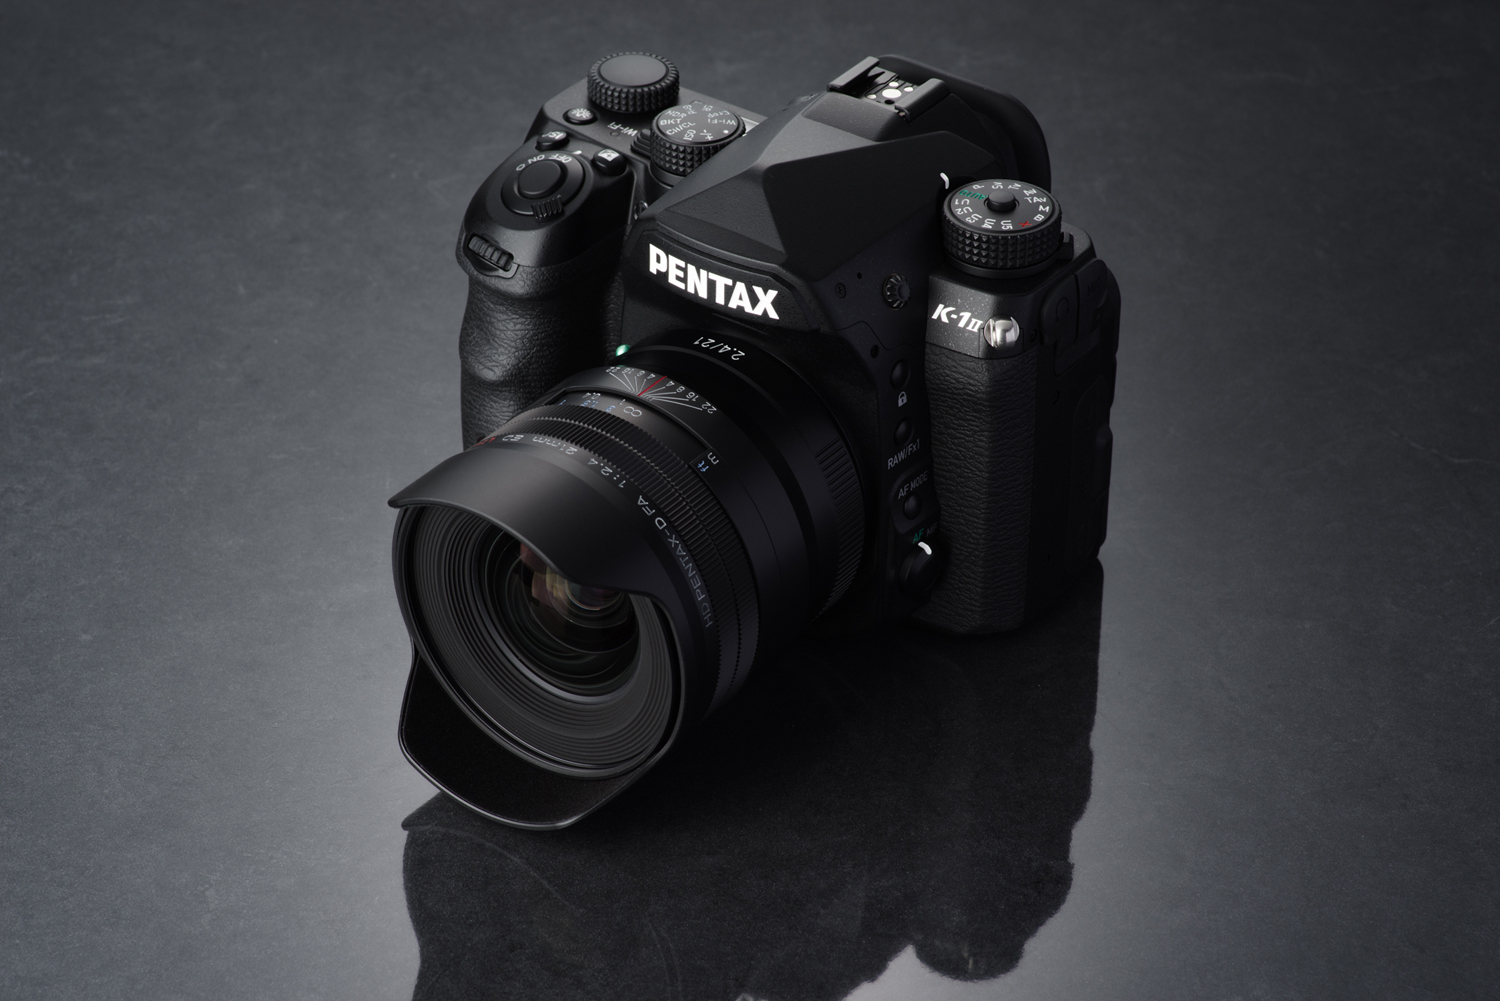 HD Pentax D-FA 21mm f/2.4 ED Limited